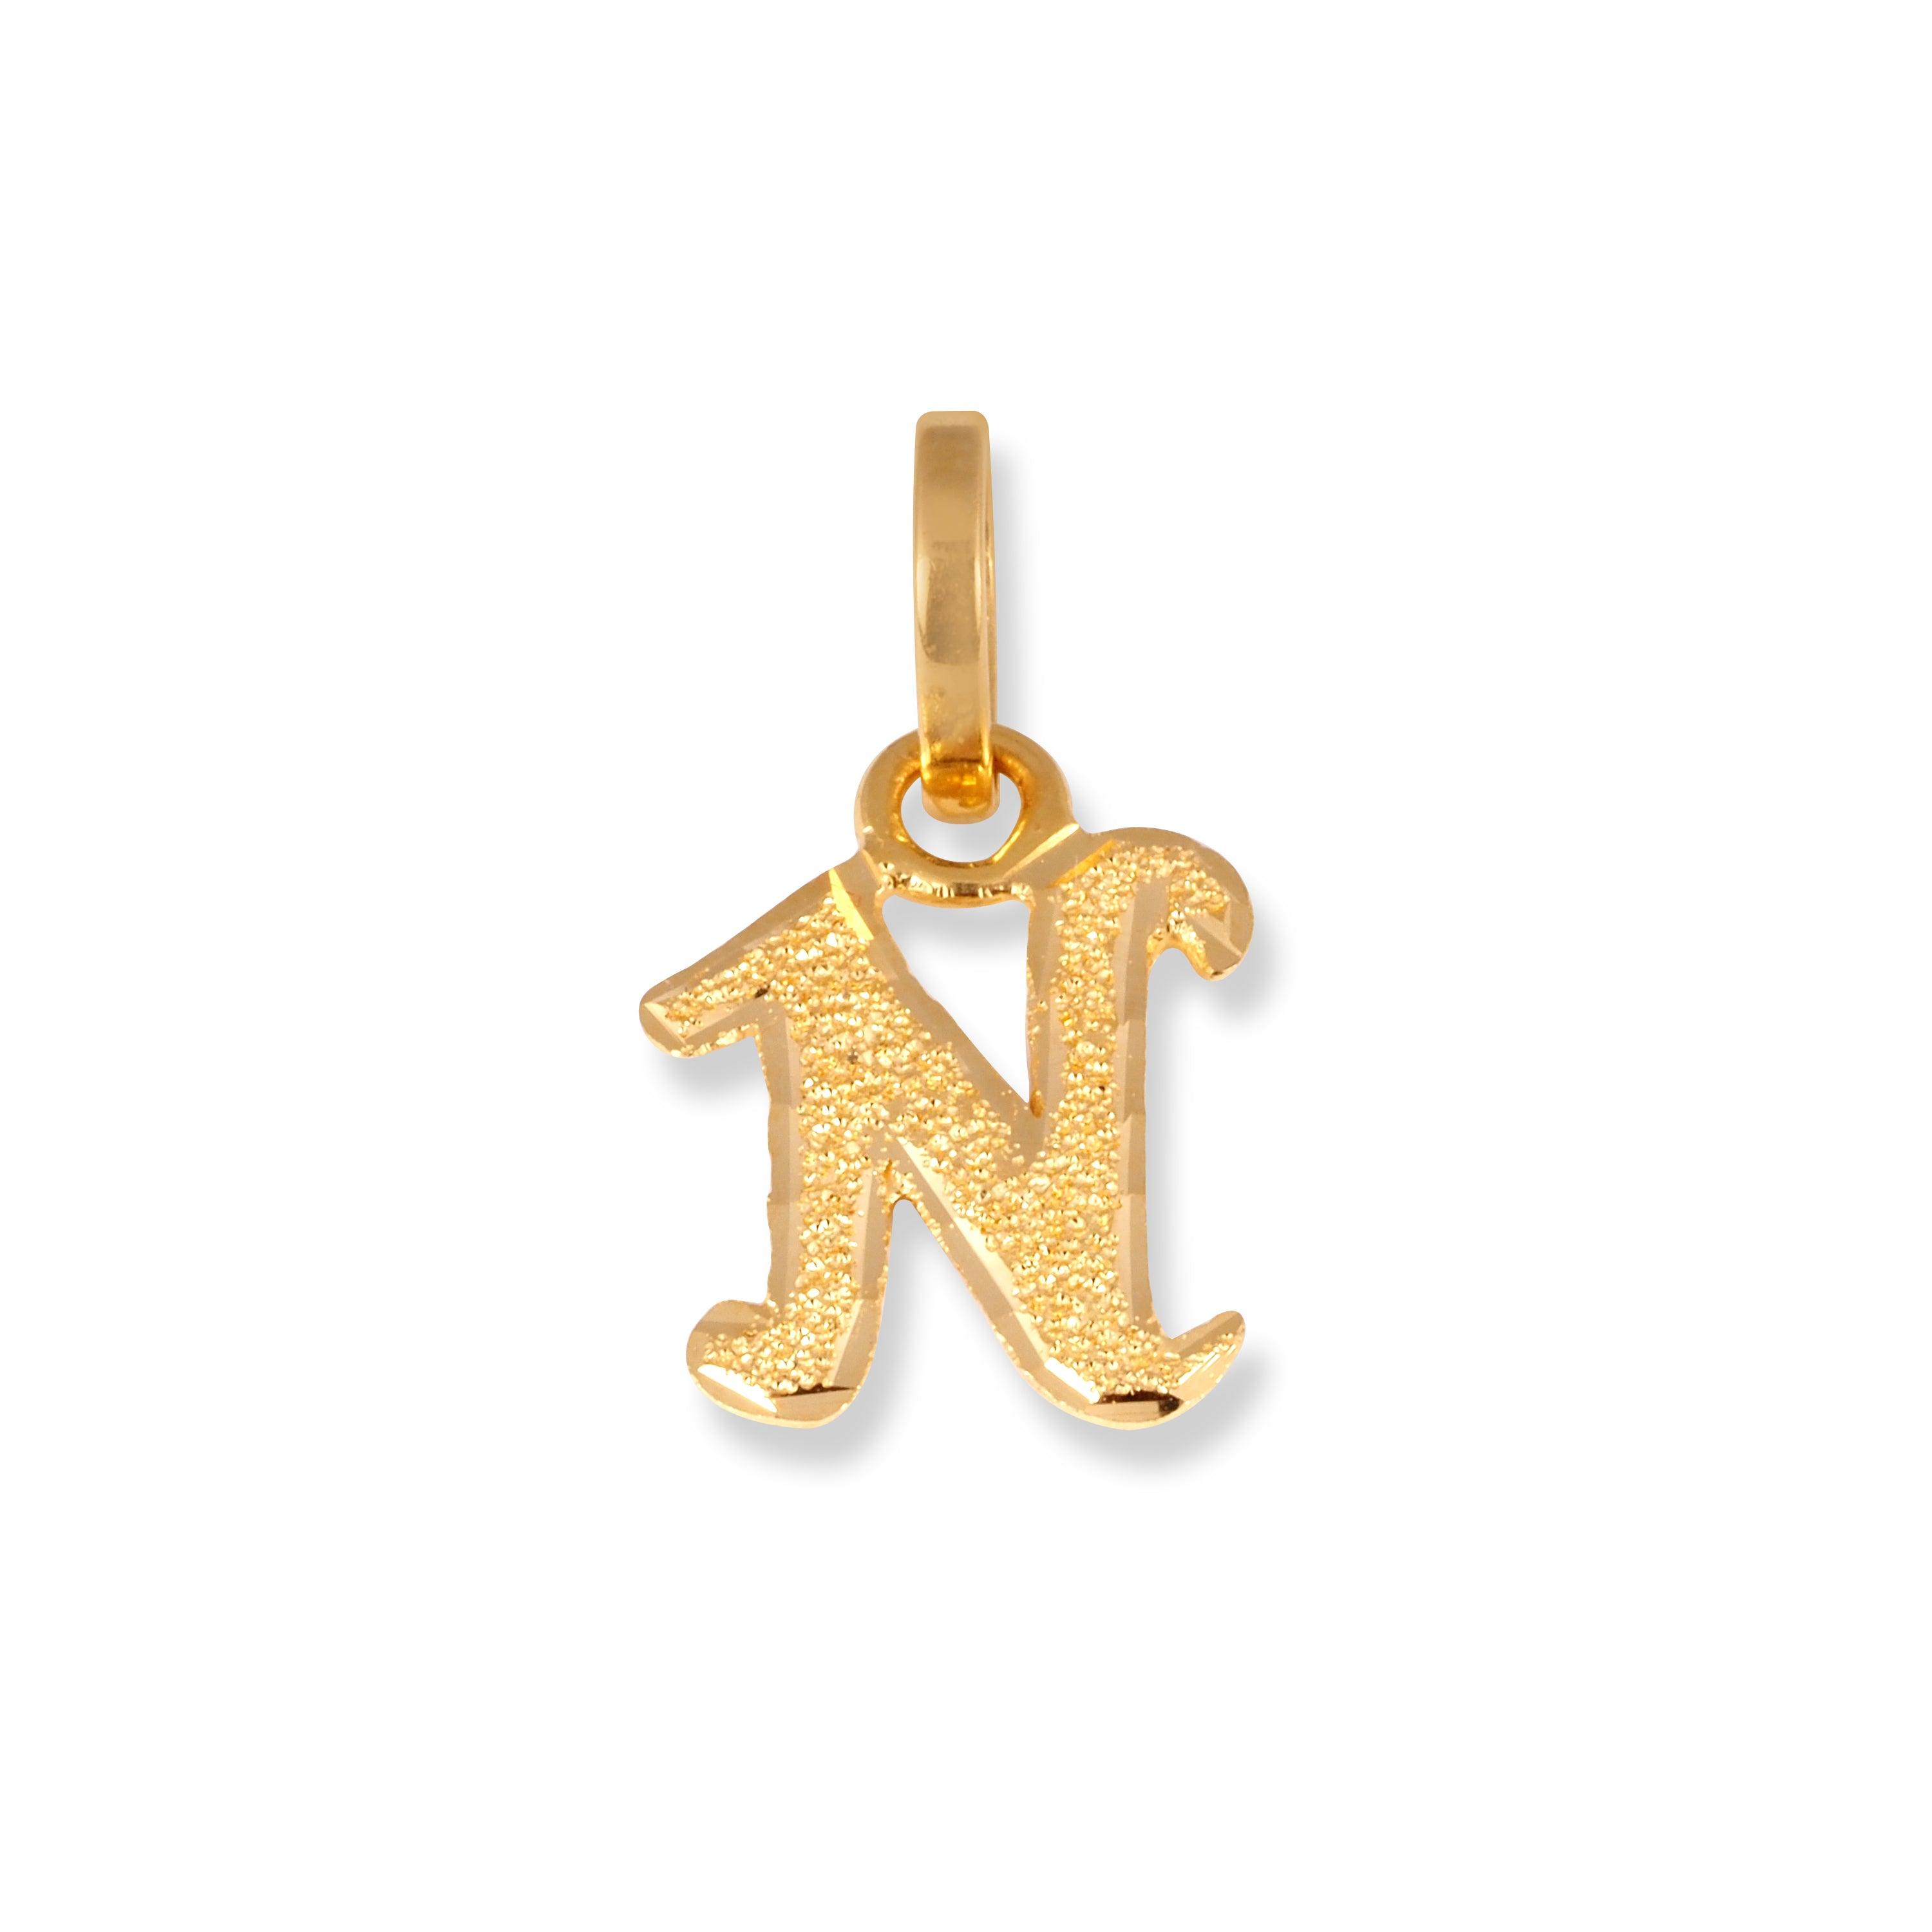 22ct Gold 'N' Initial Pendant P-7047-N - Minar Jewellers